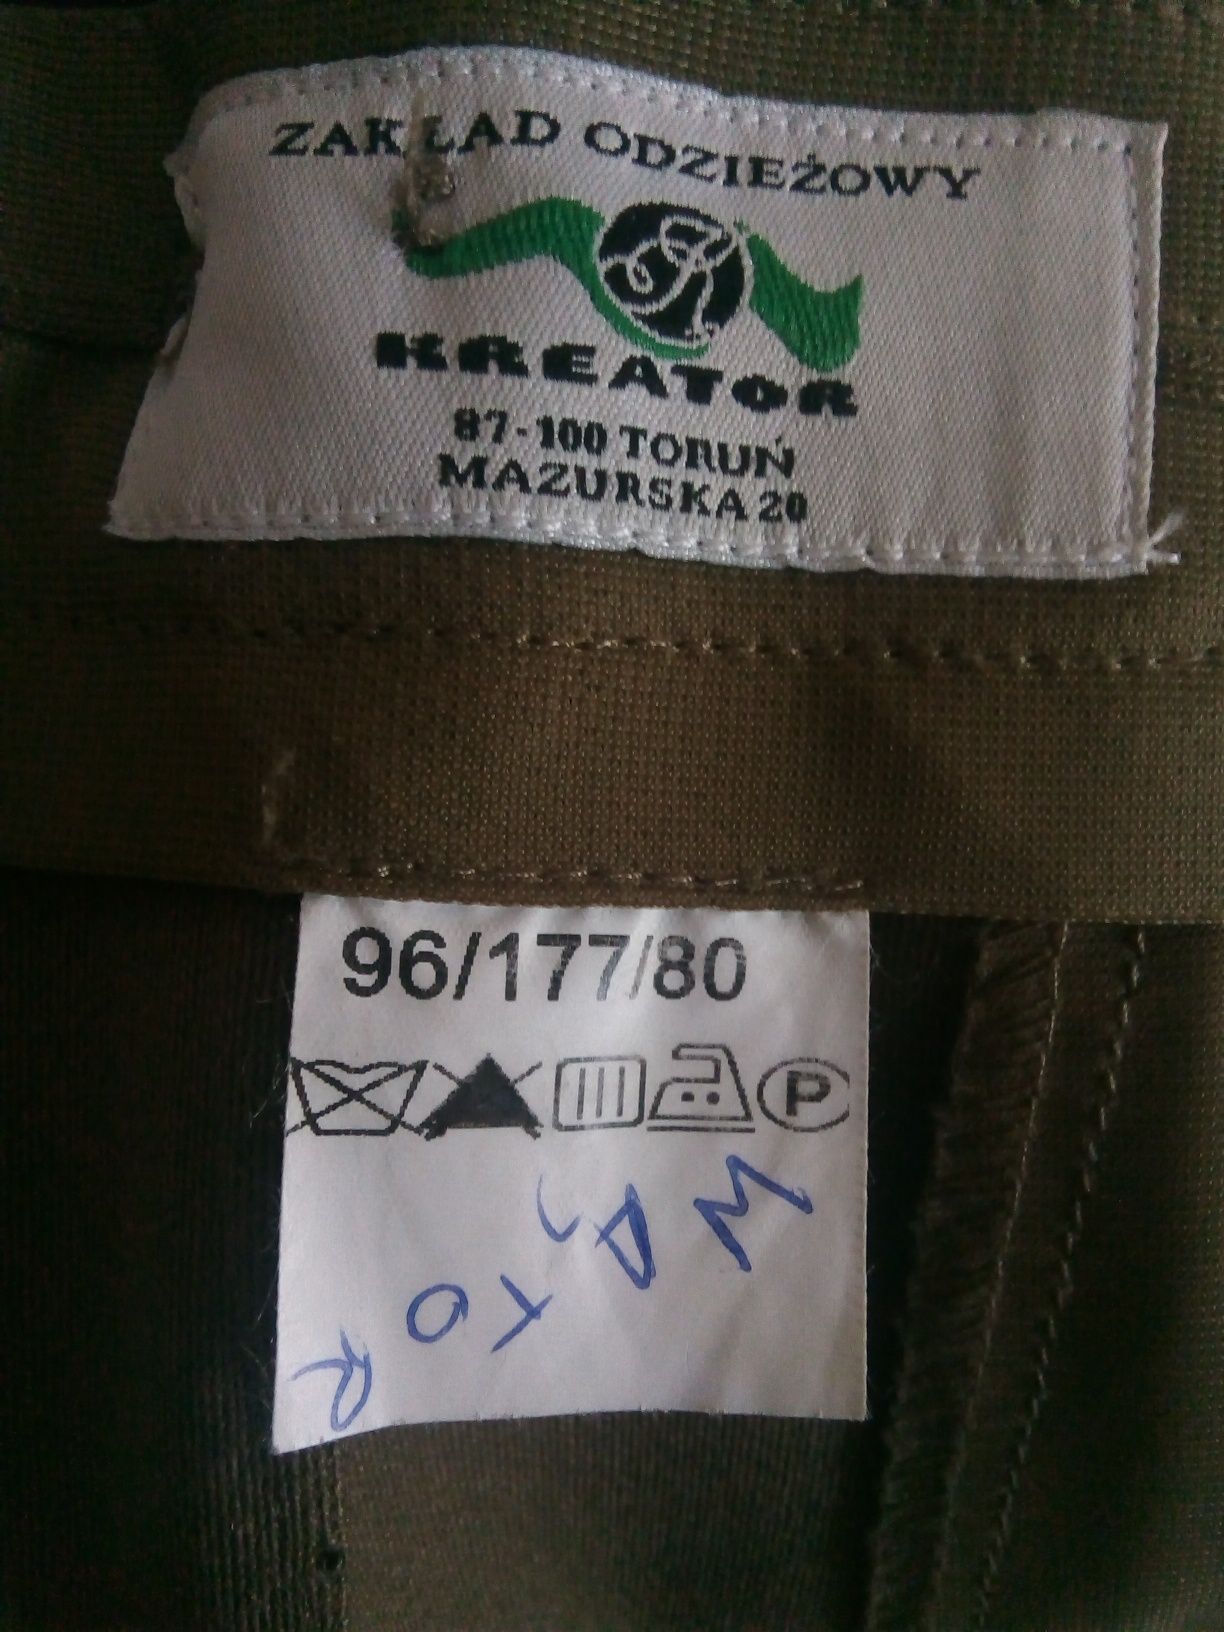 Spodnie od munduru wyjściowego wojsk lądowych, 101/MON, roz. 96/177/80